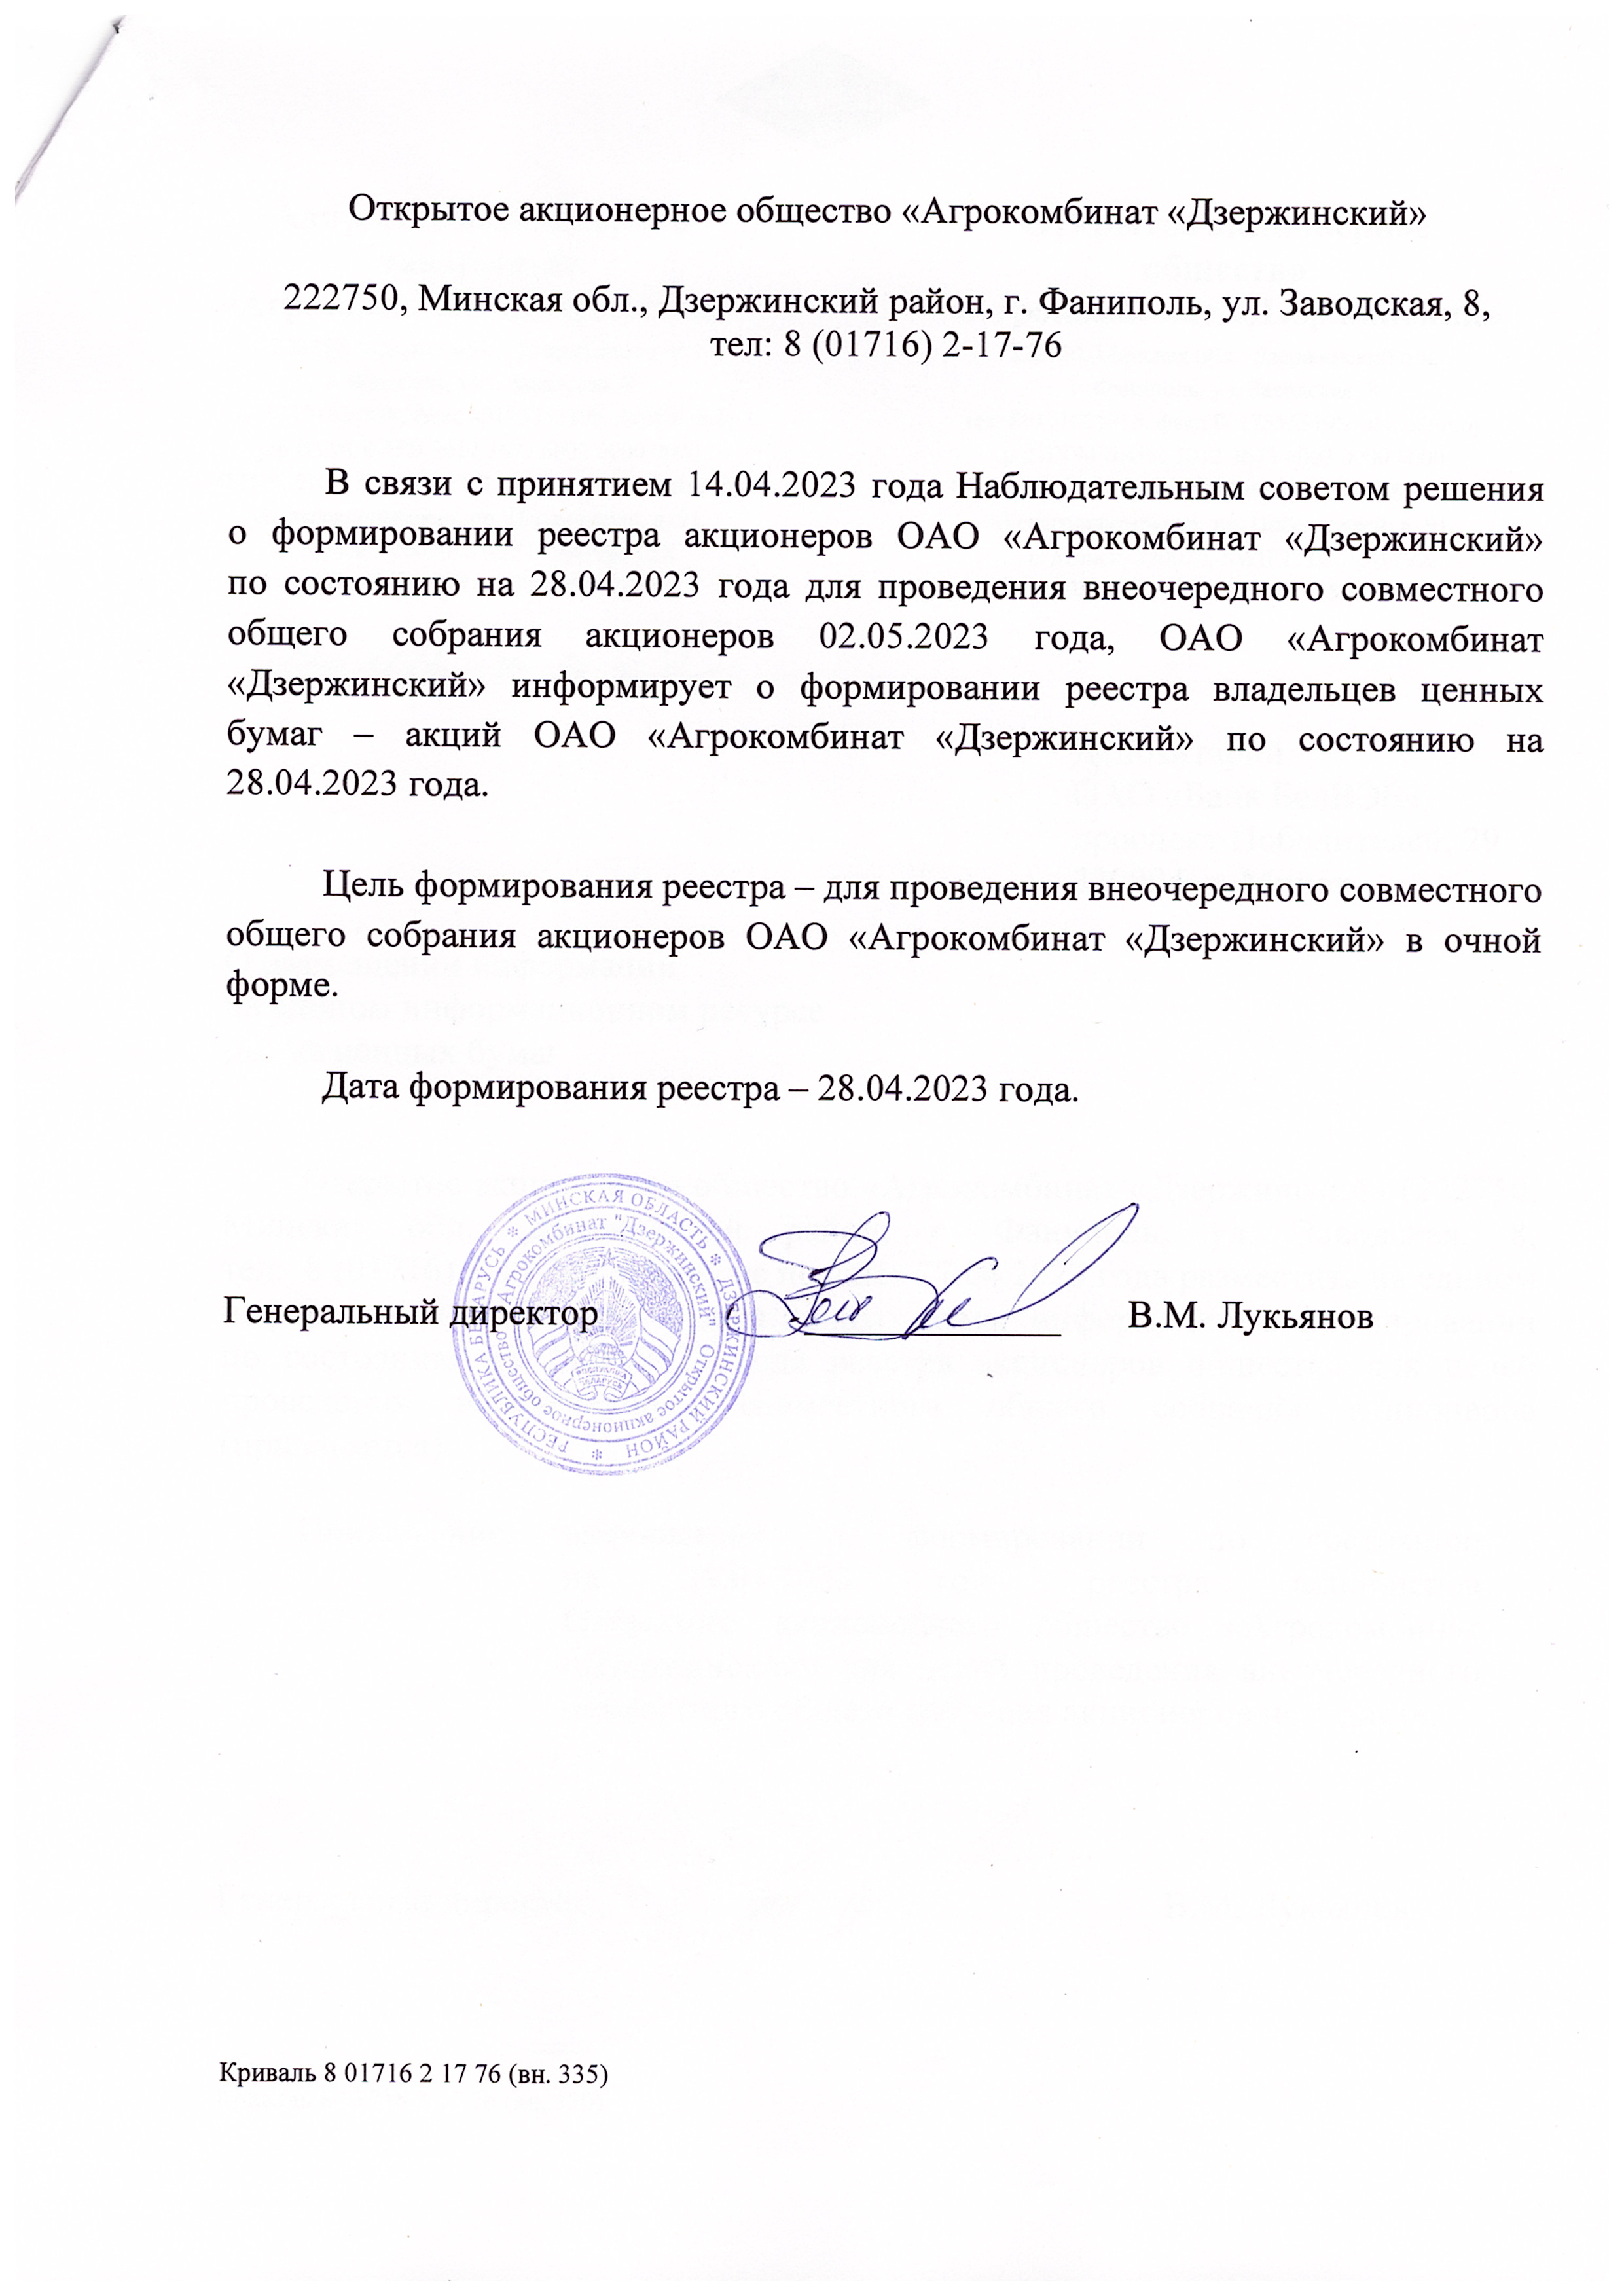 Информация о формировании реестра акционеров на 28.04.2023 г.